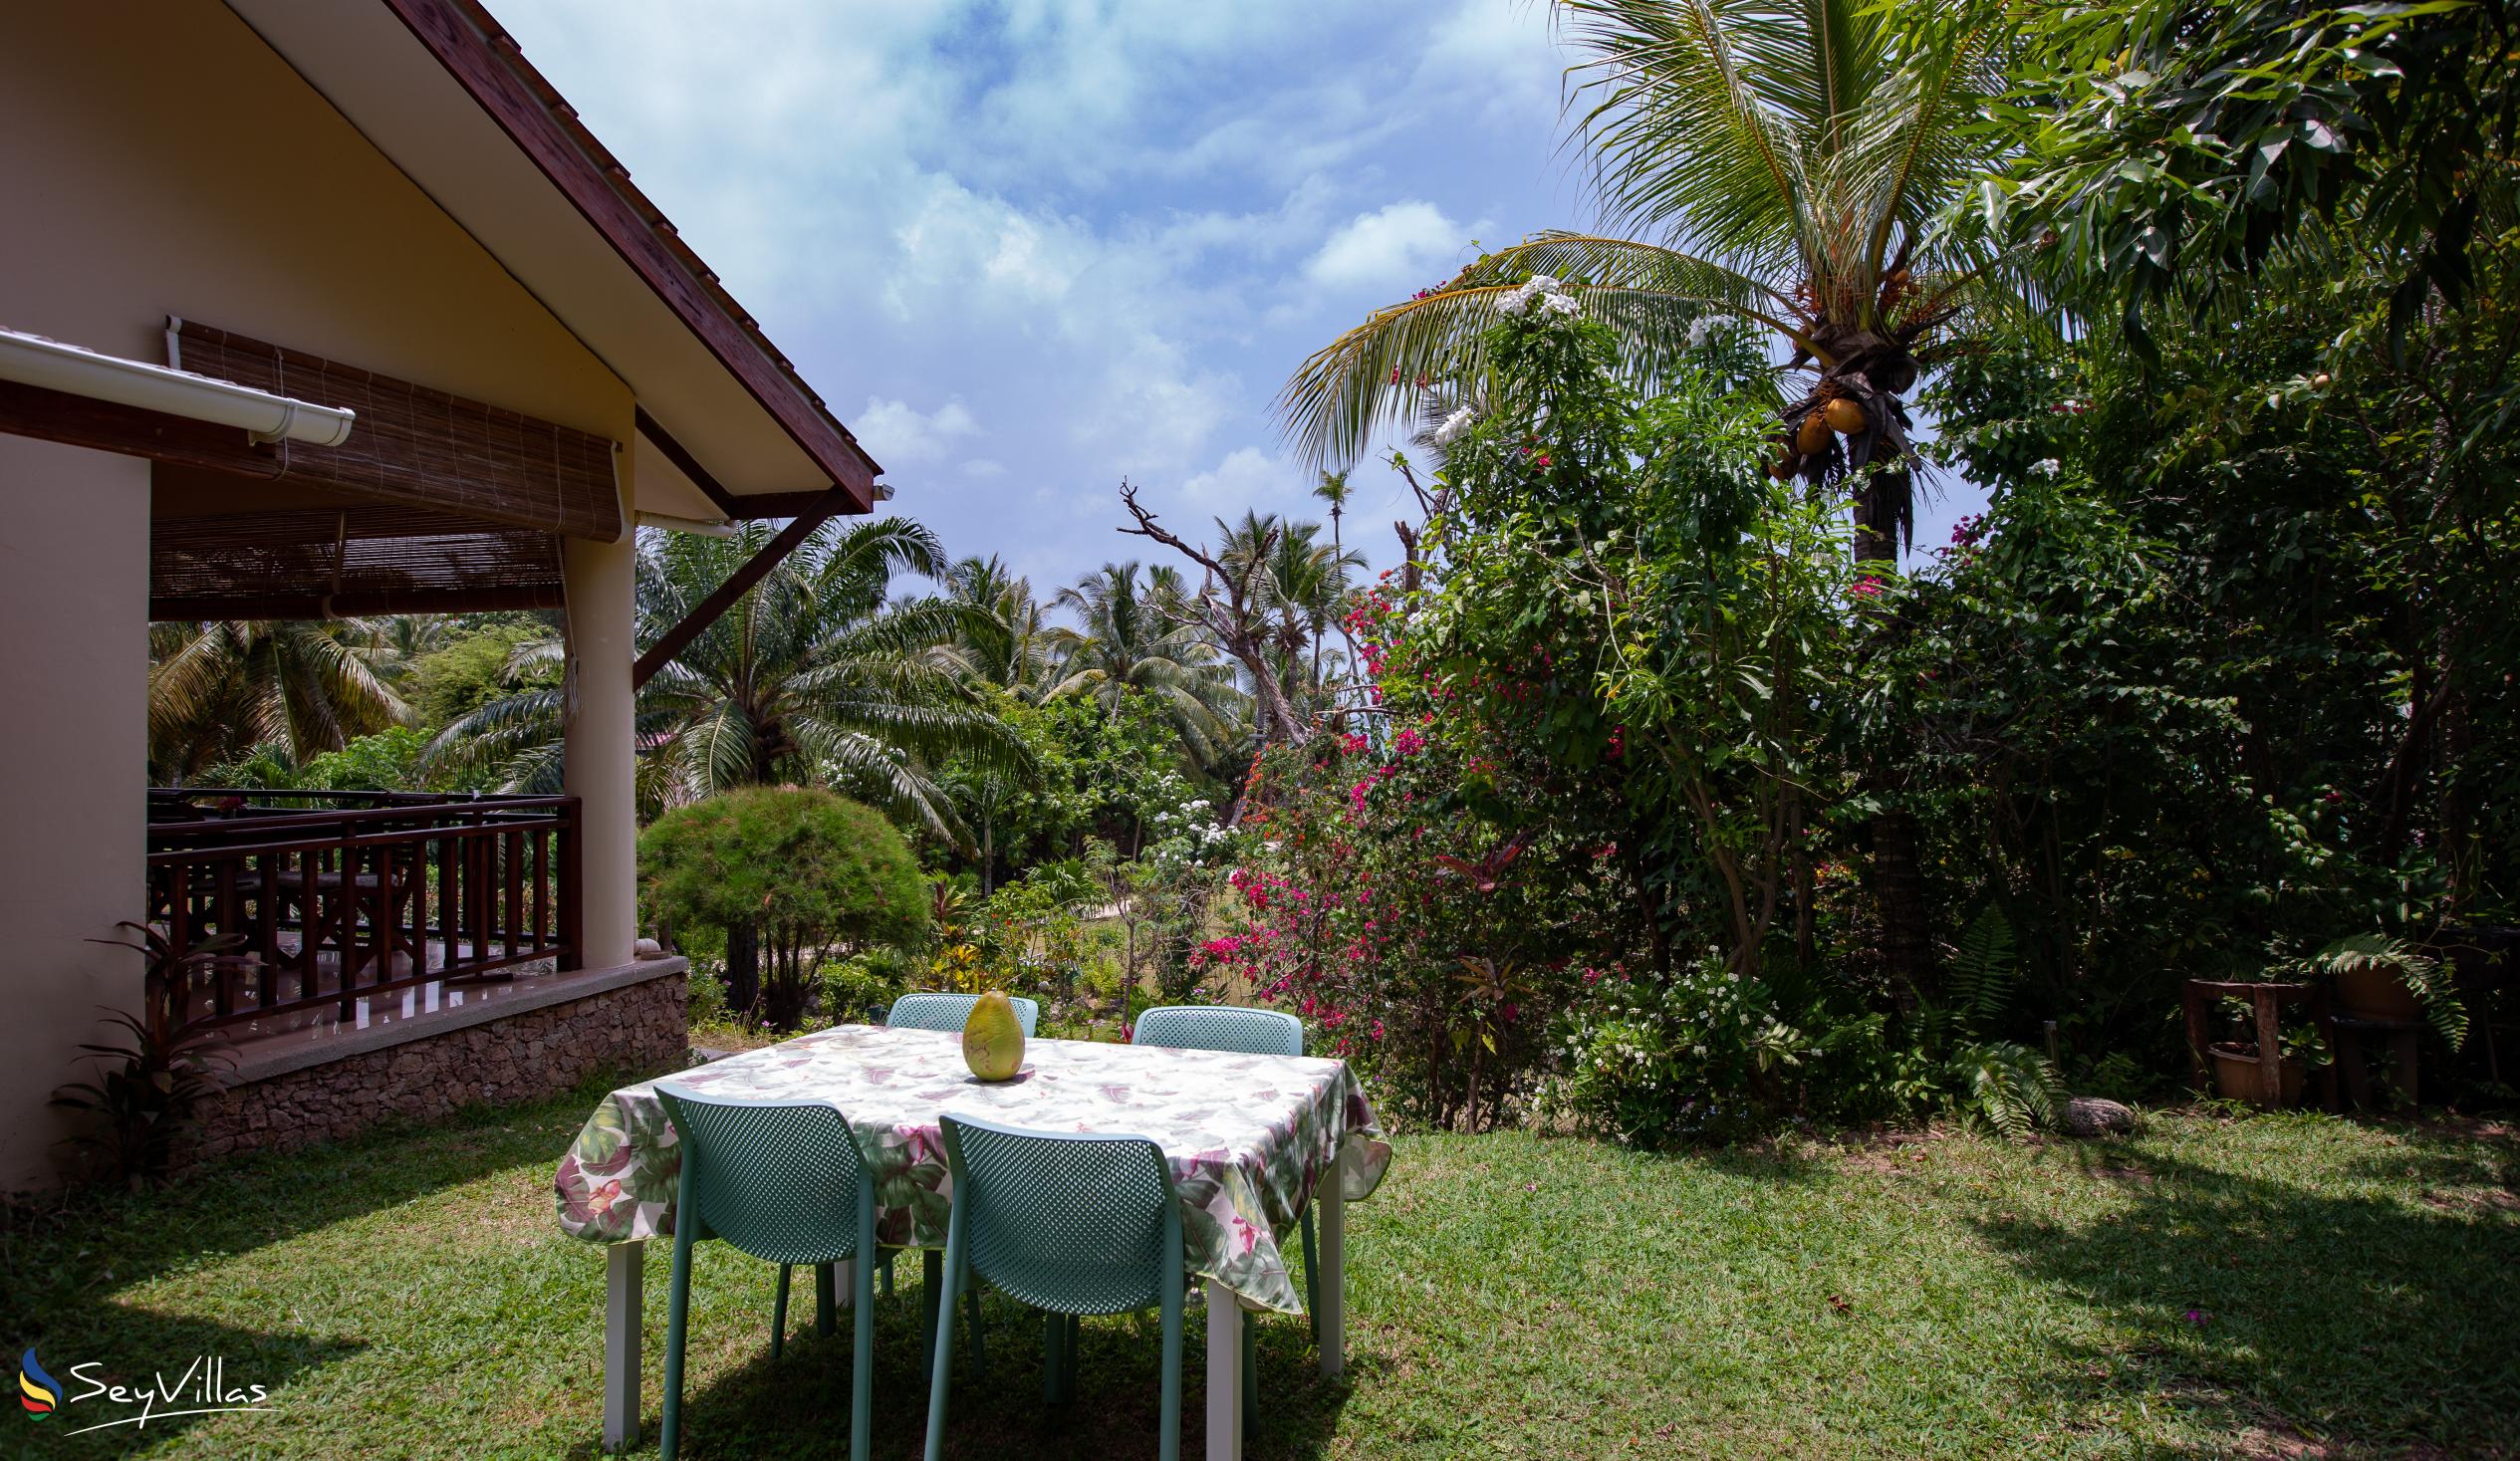 Foto 24: Villas du Voyageur - Aussenbereich - Praslin (Seychellen)